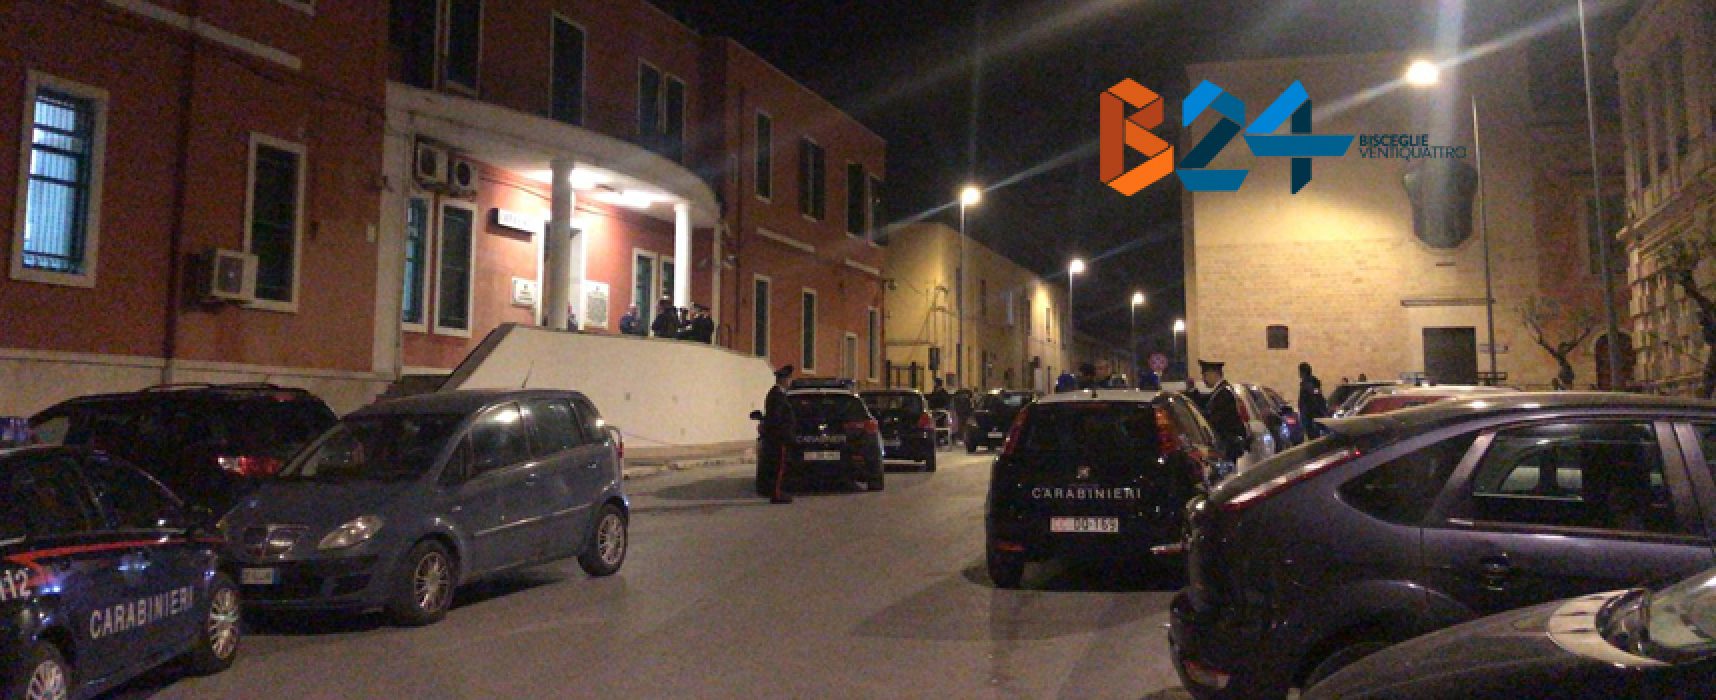 Spara durante inseguimento, 22enne arrestato dai carabinieri